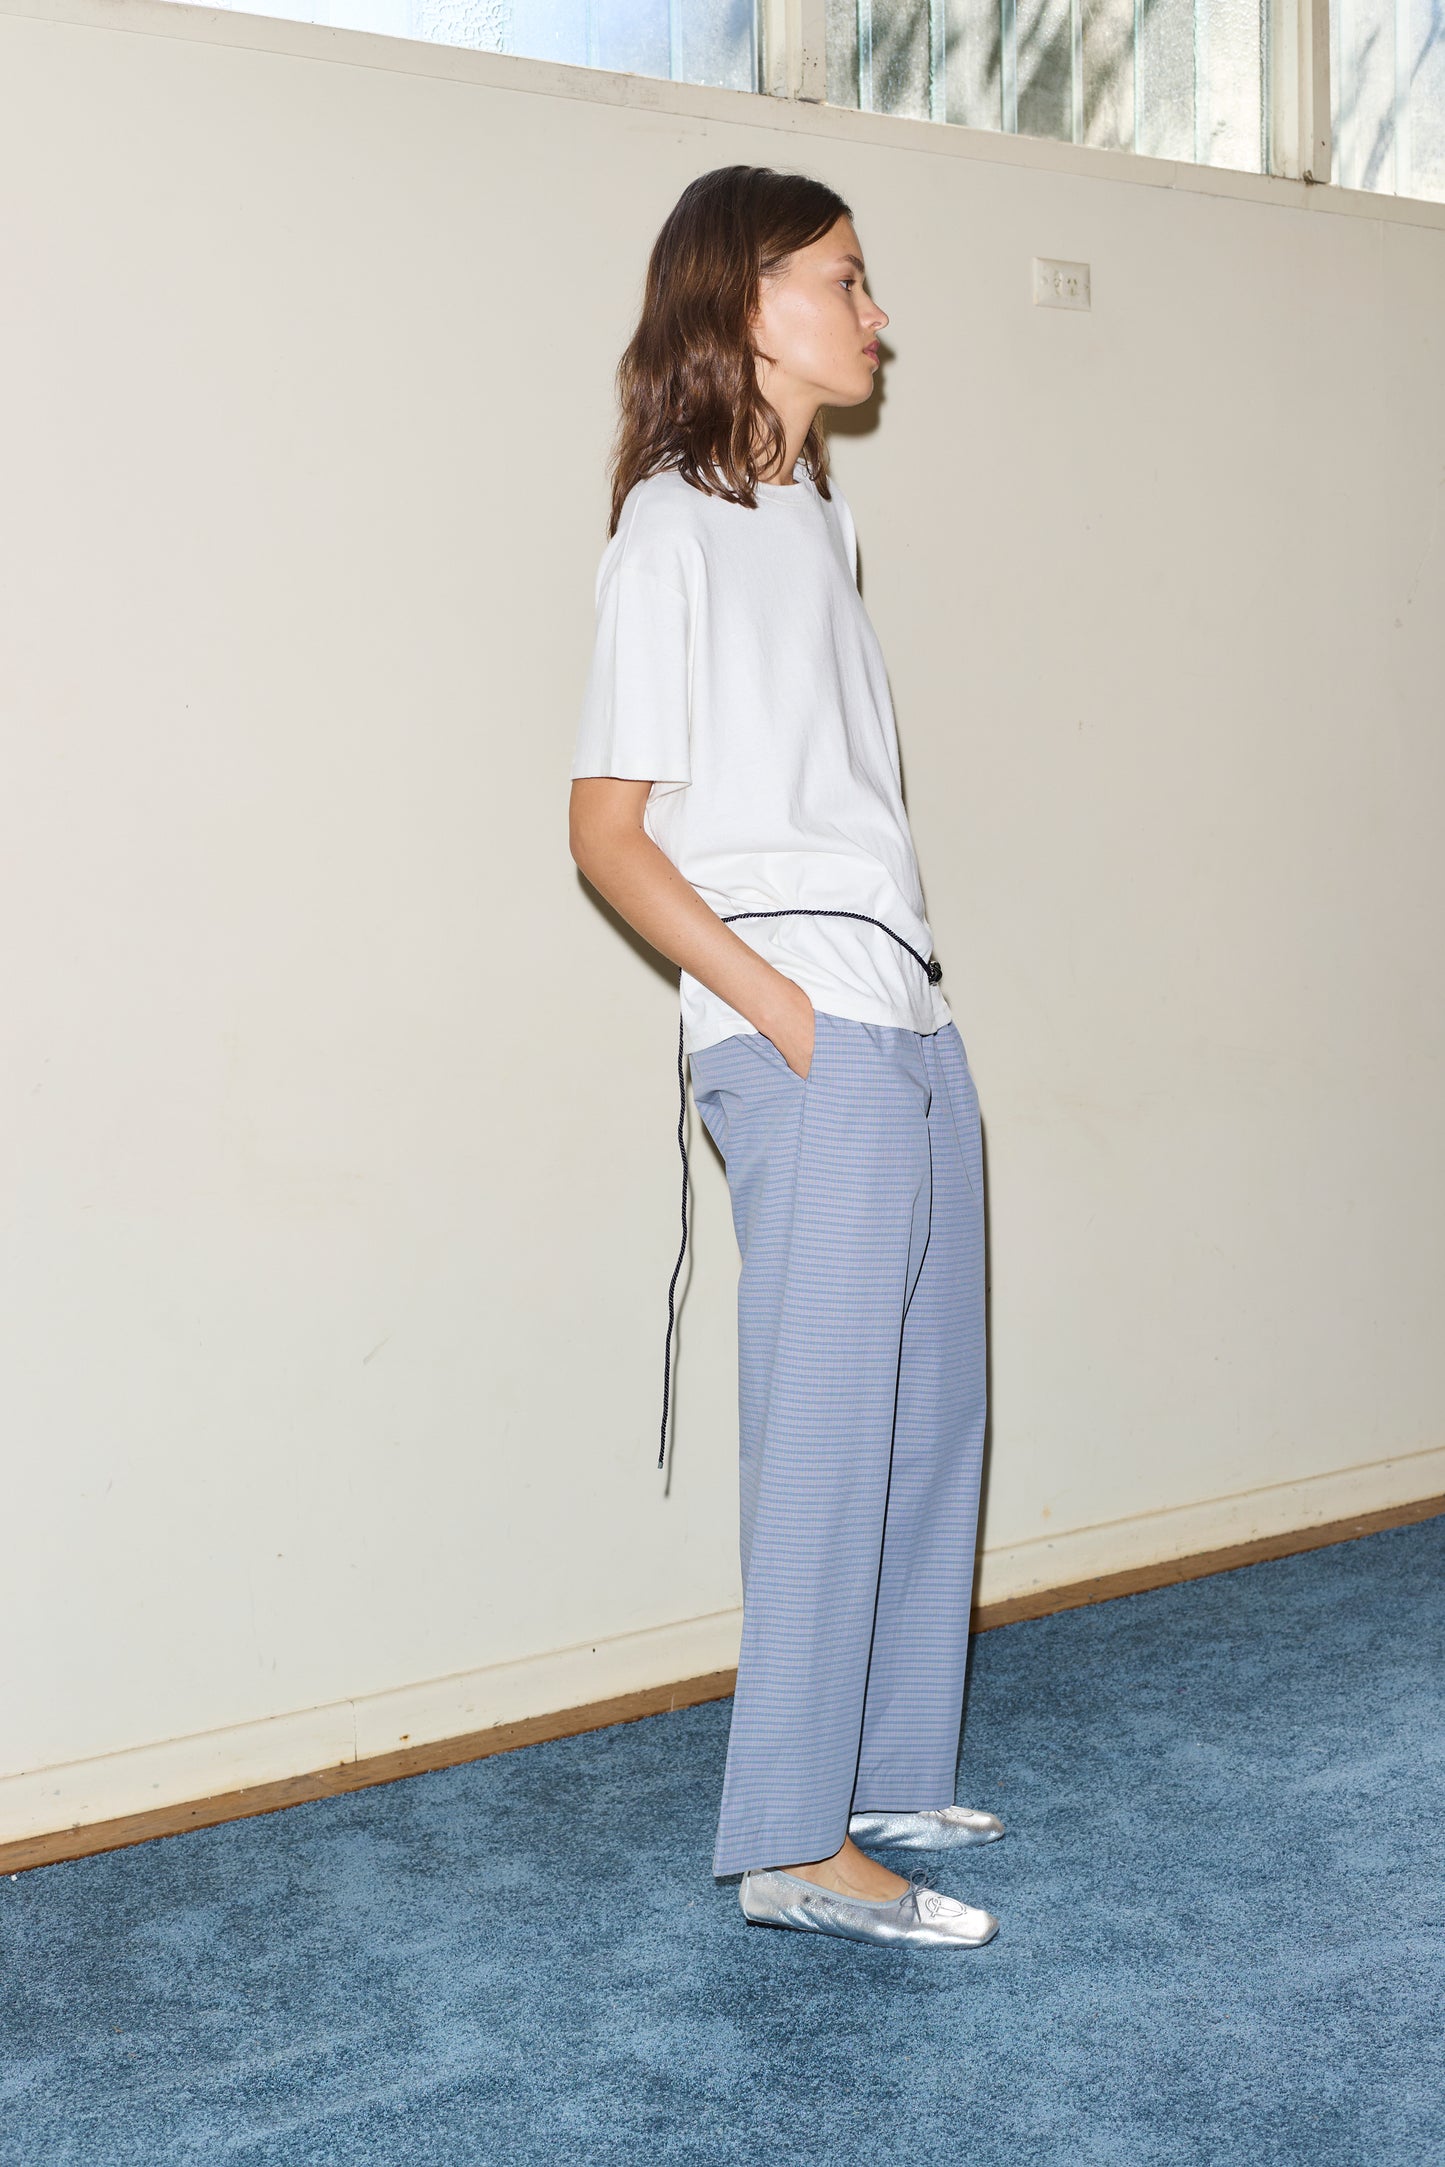 Female model wearing the ease trouser - pillow check by Deiji Studios against plain background